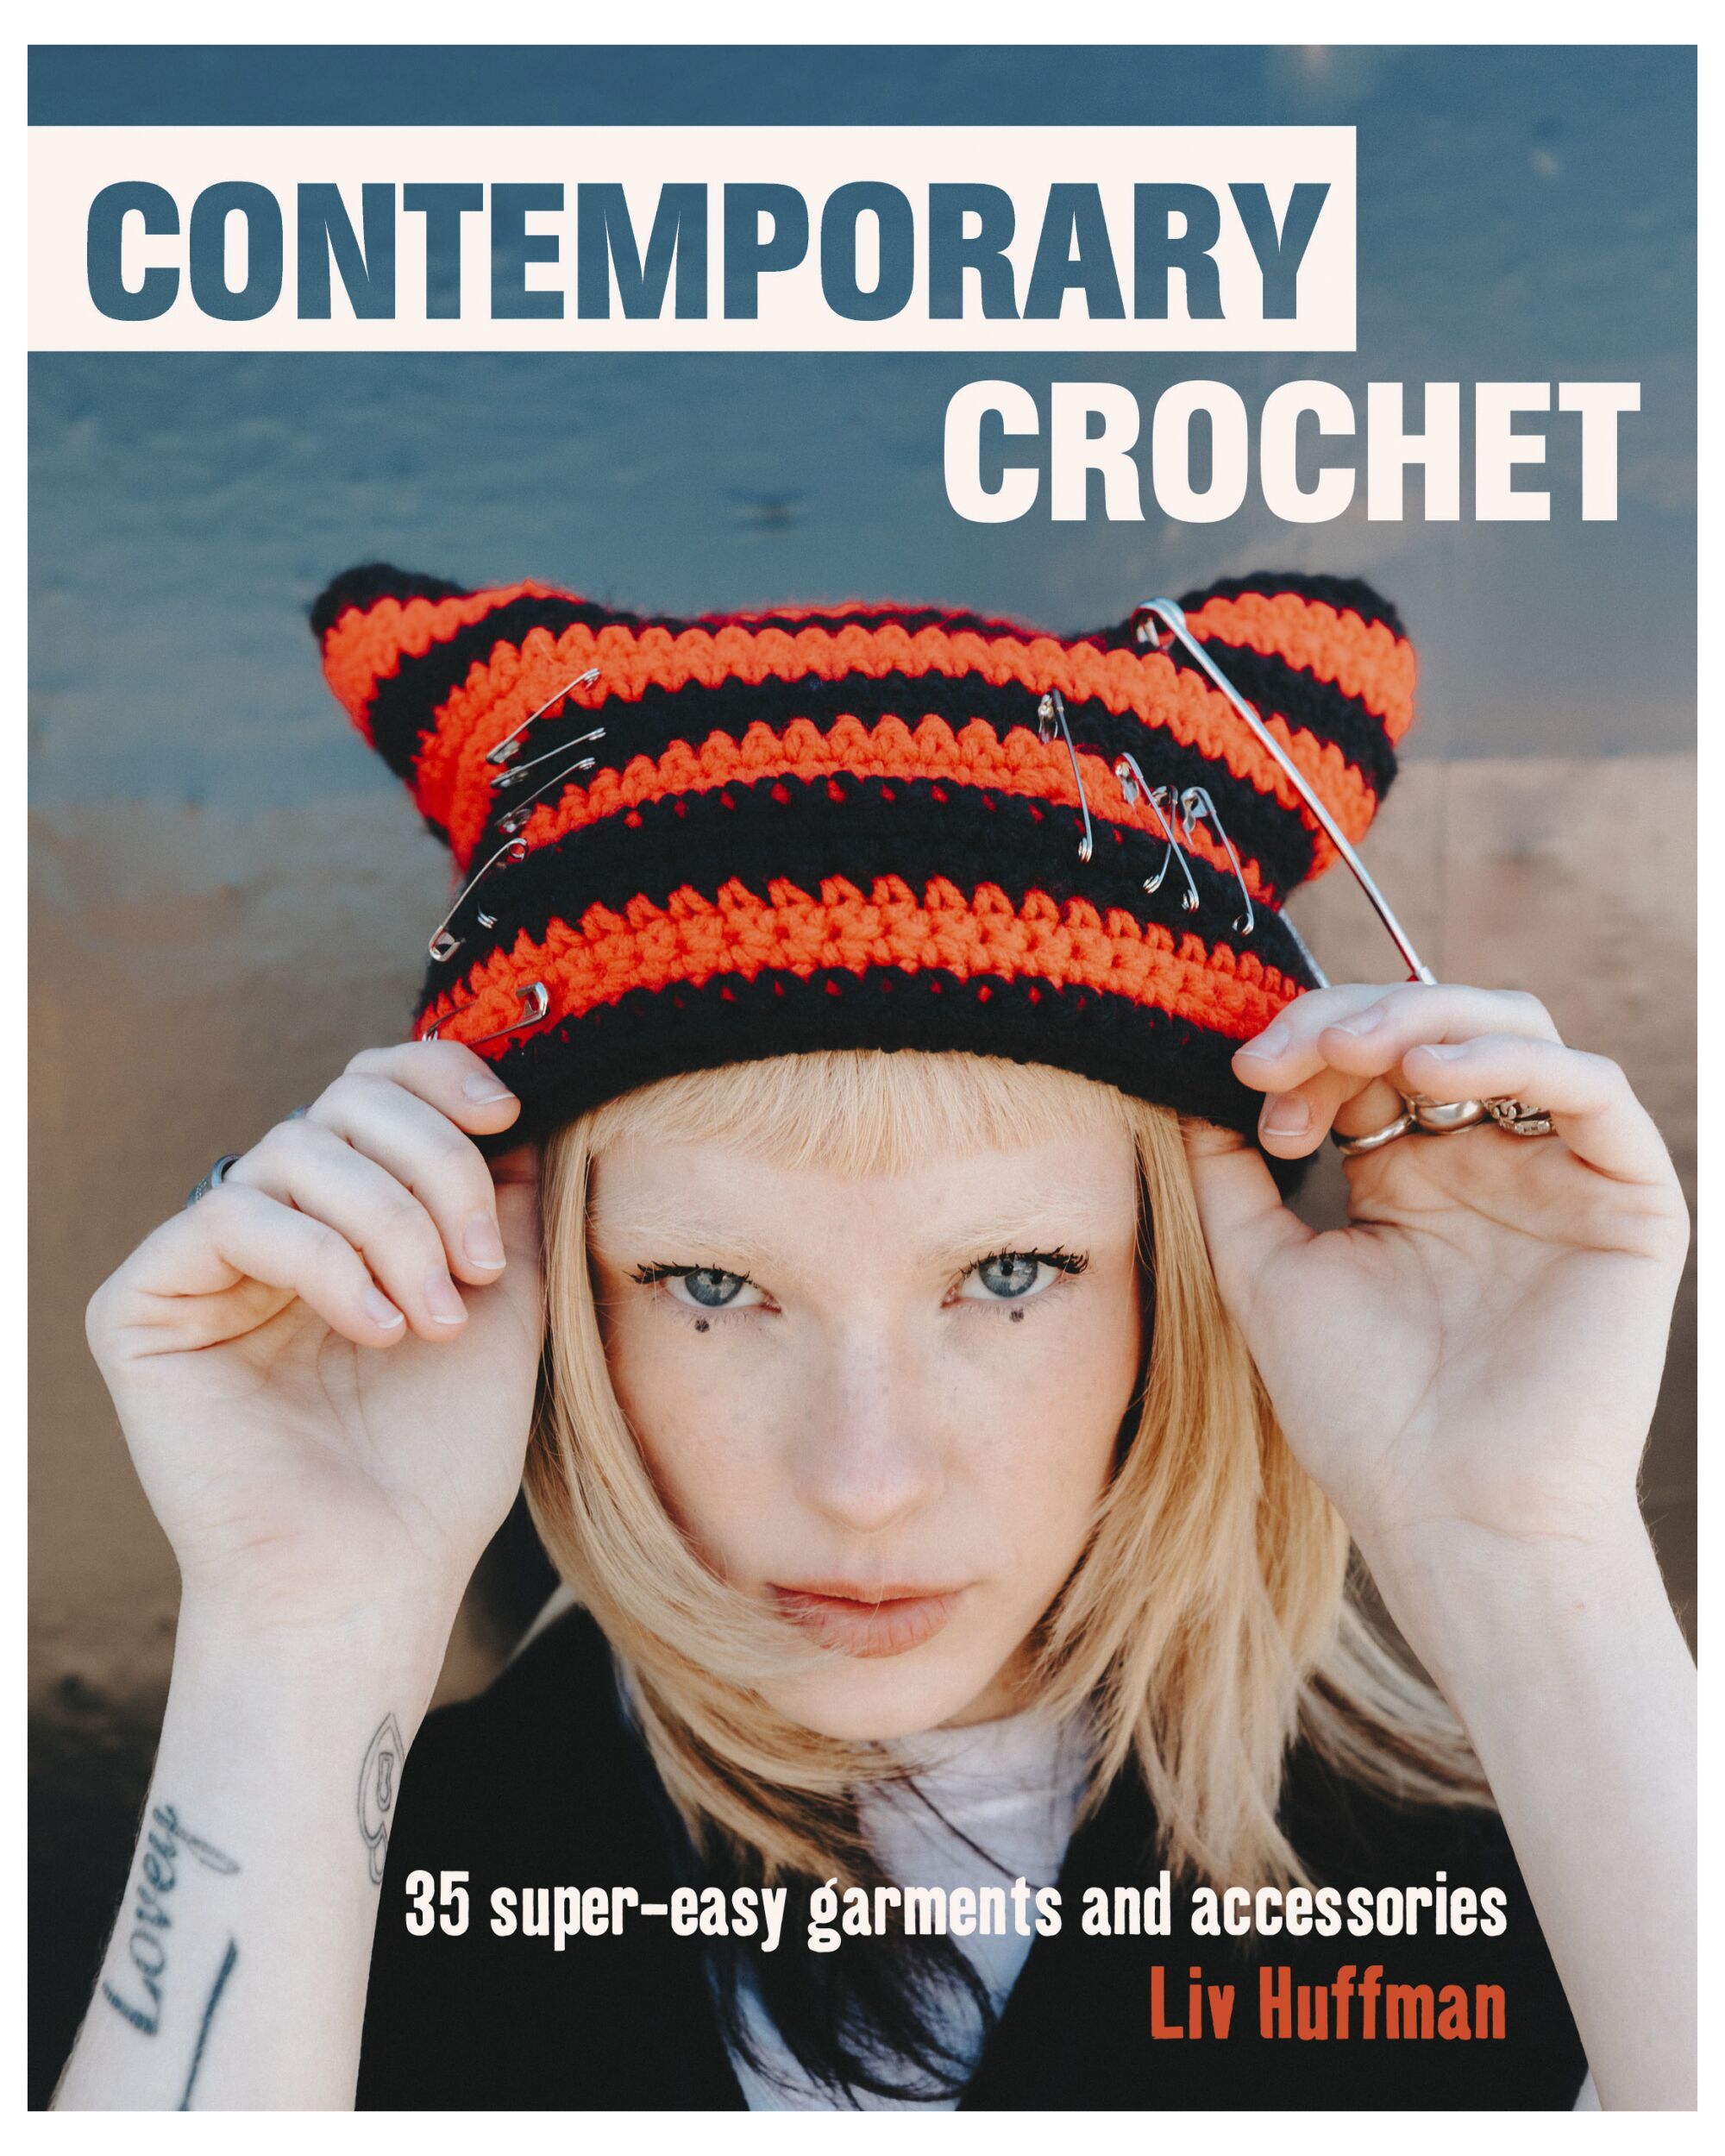 Liv Huffman's "Contemporary Crochet" book